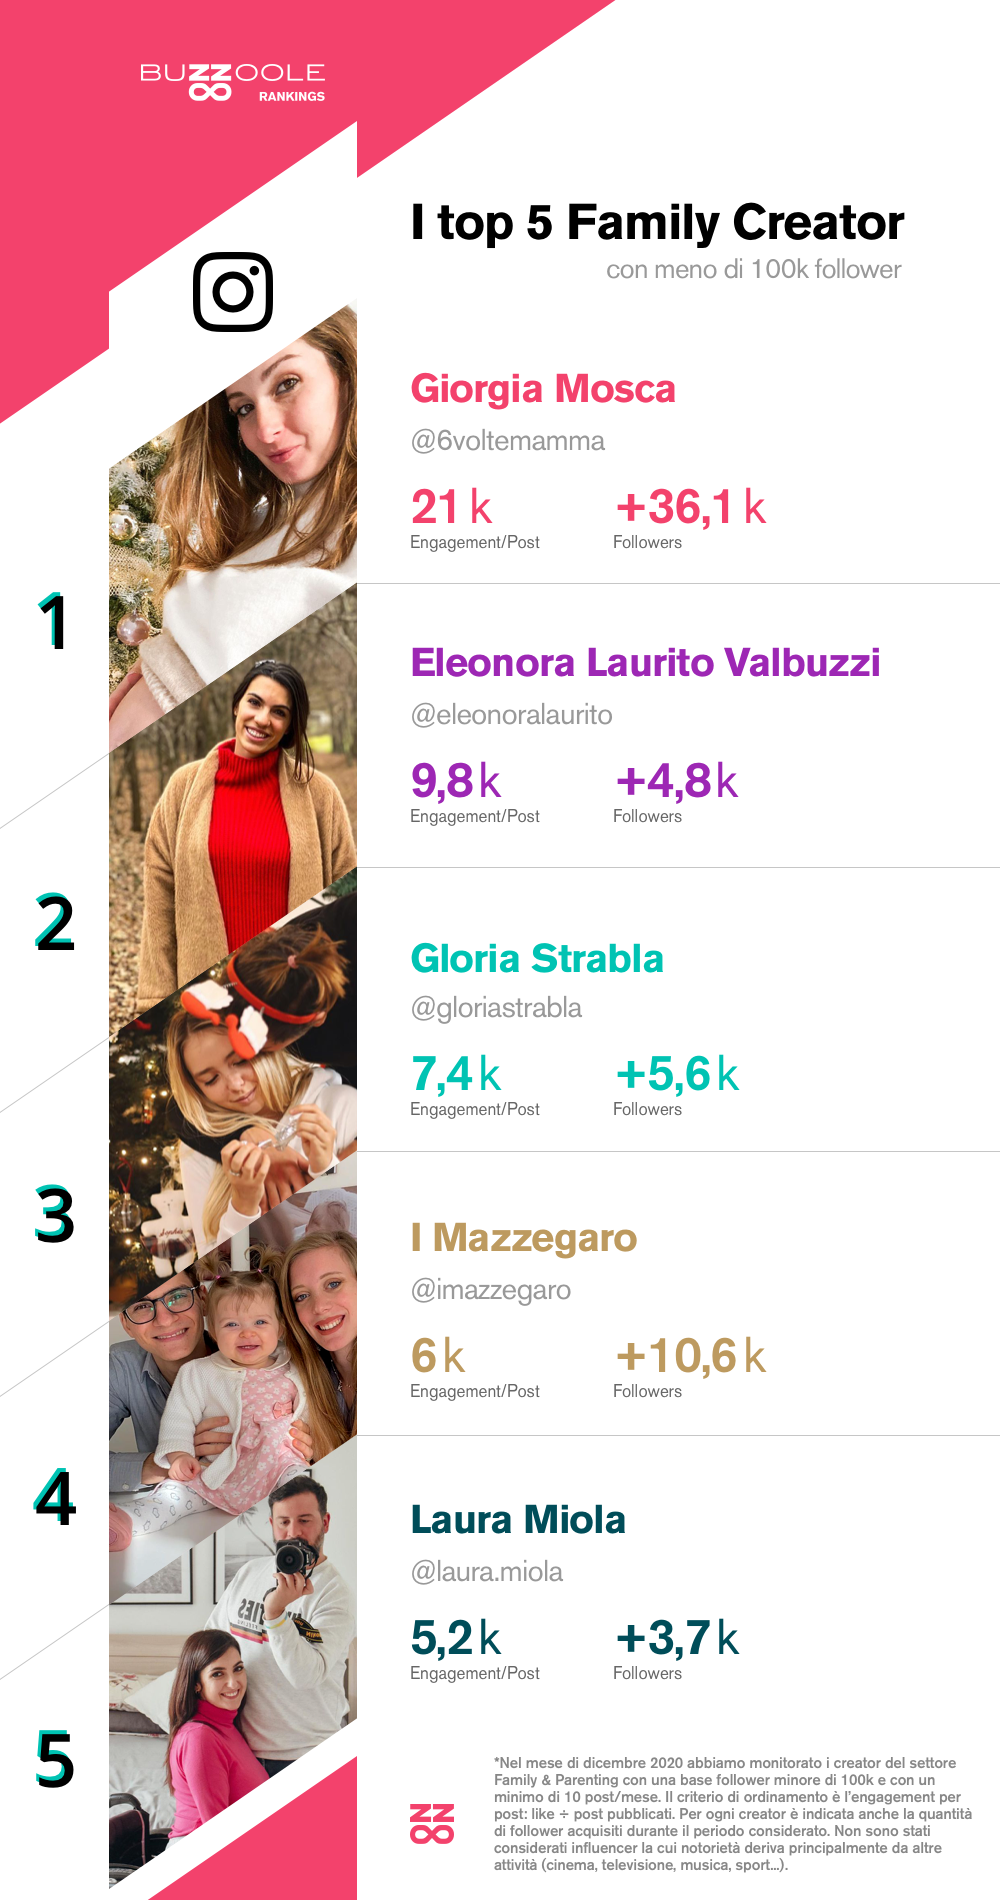 La classifica Rising Star dei migliori creator family italiani del 2021